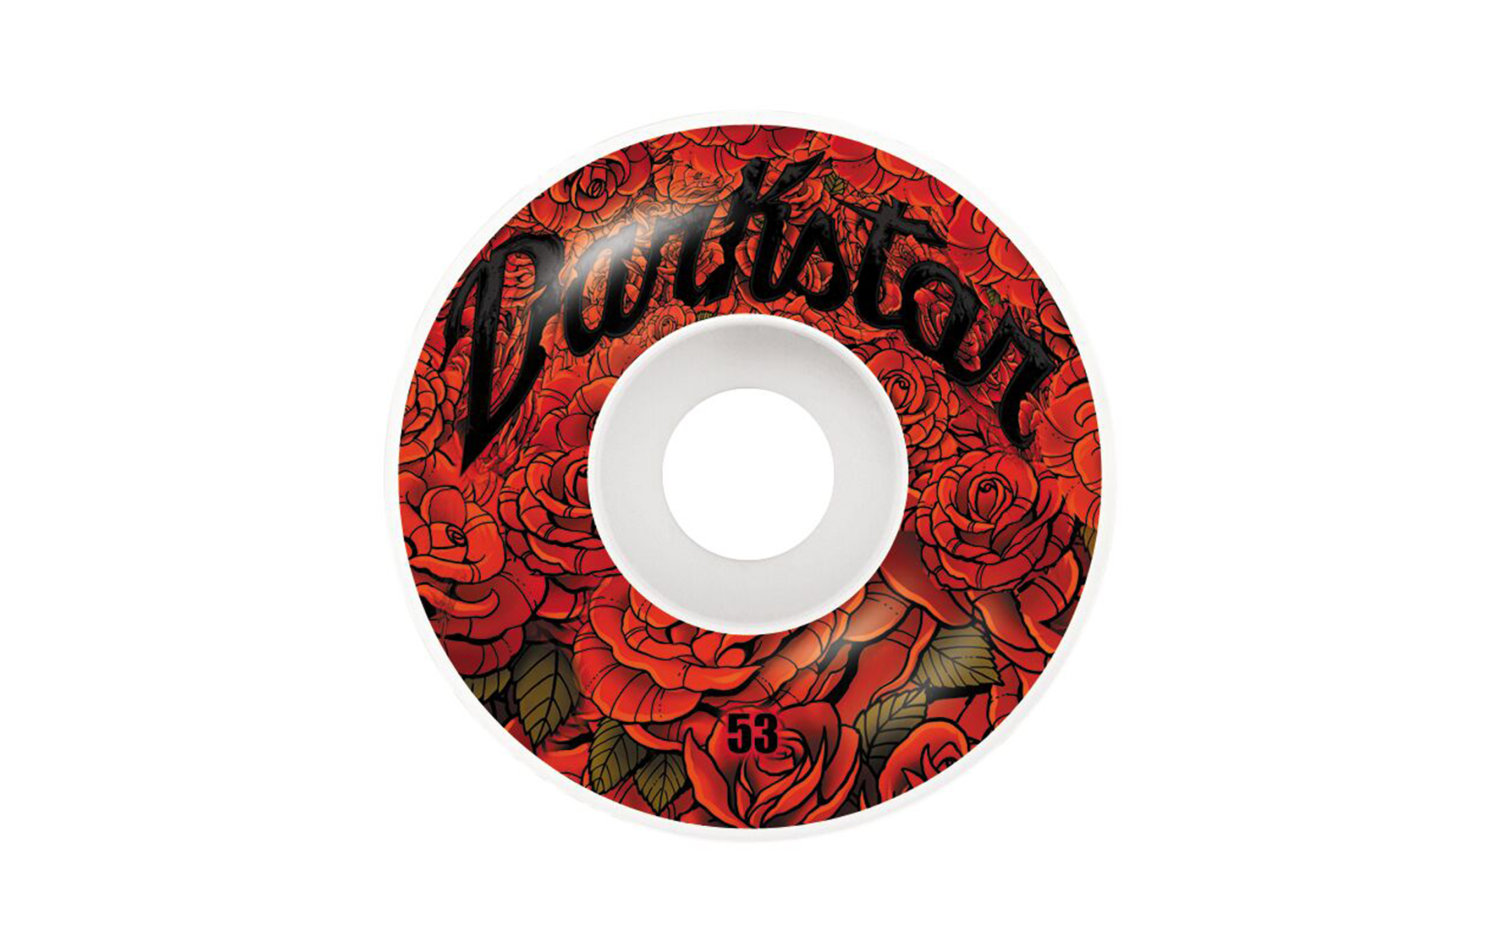 Darkstar Roses Wheels 53mm (10112321)